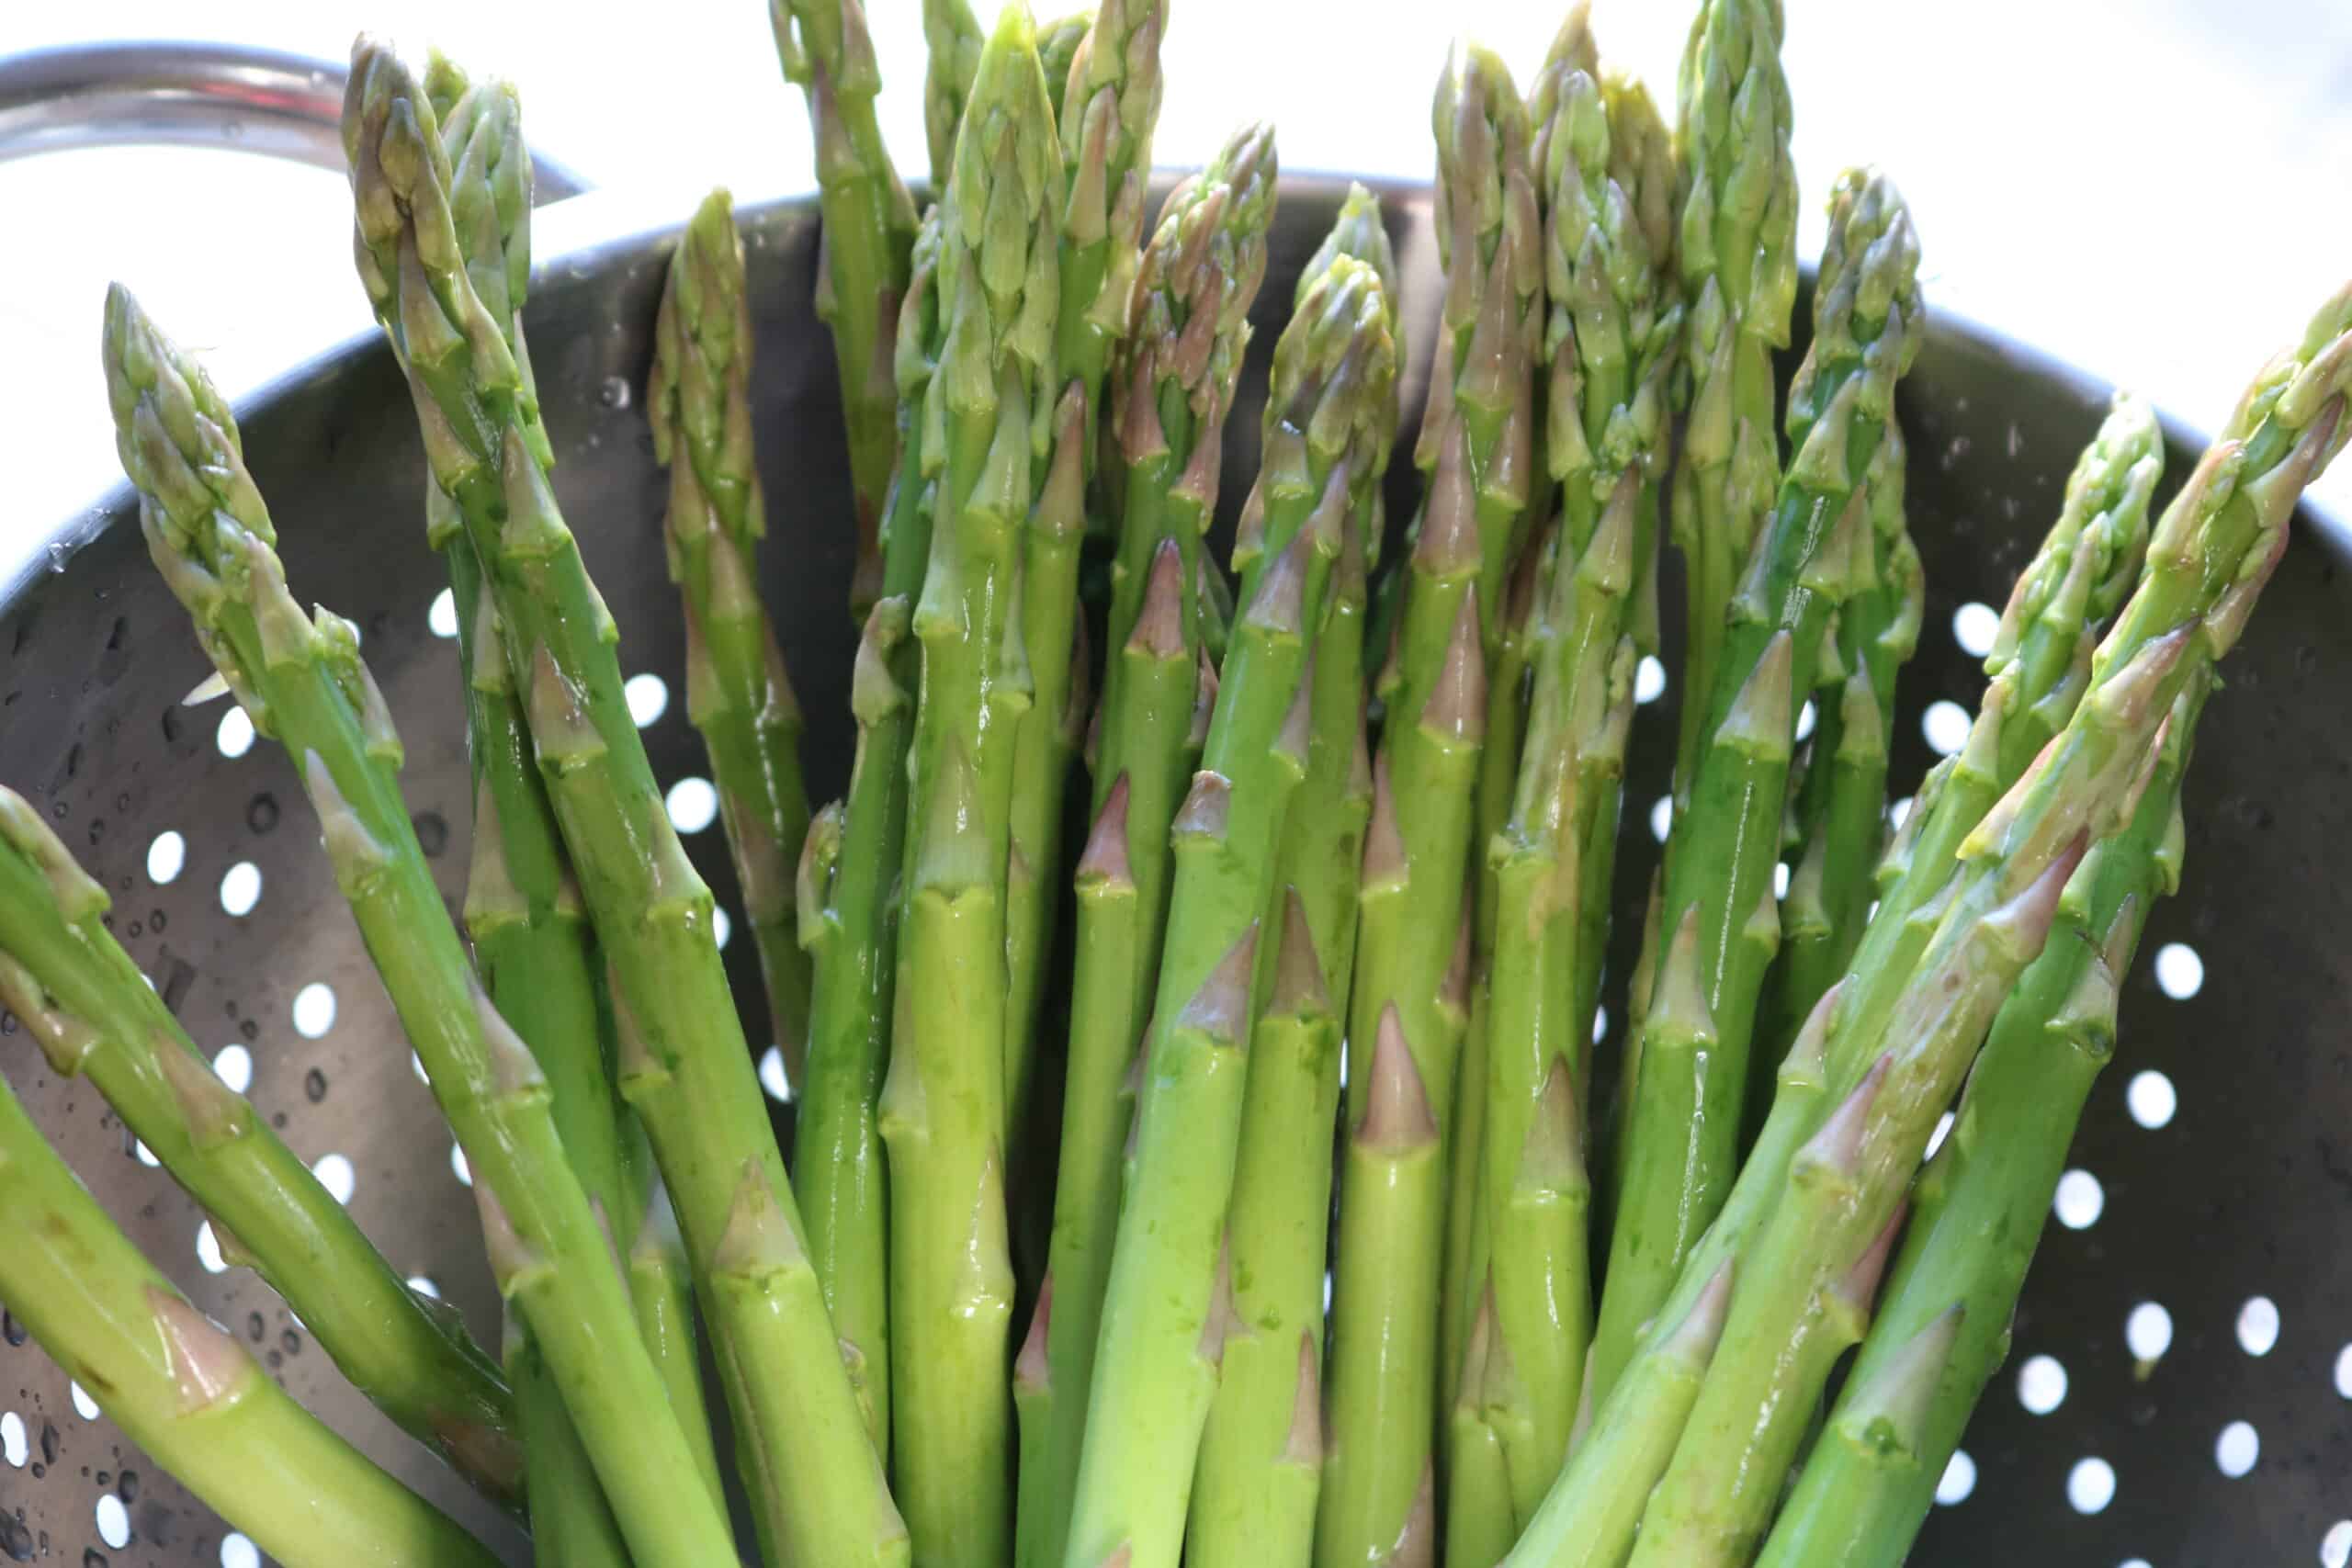 washed trimmed asparagus